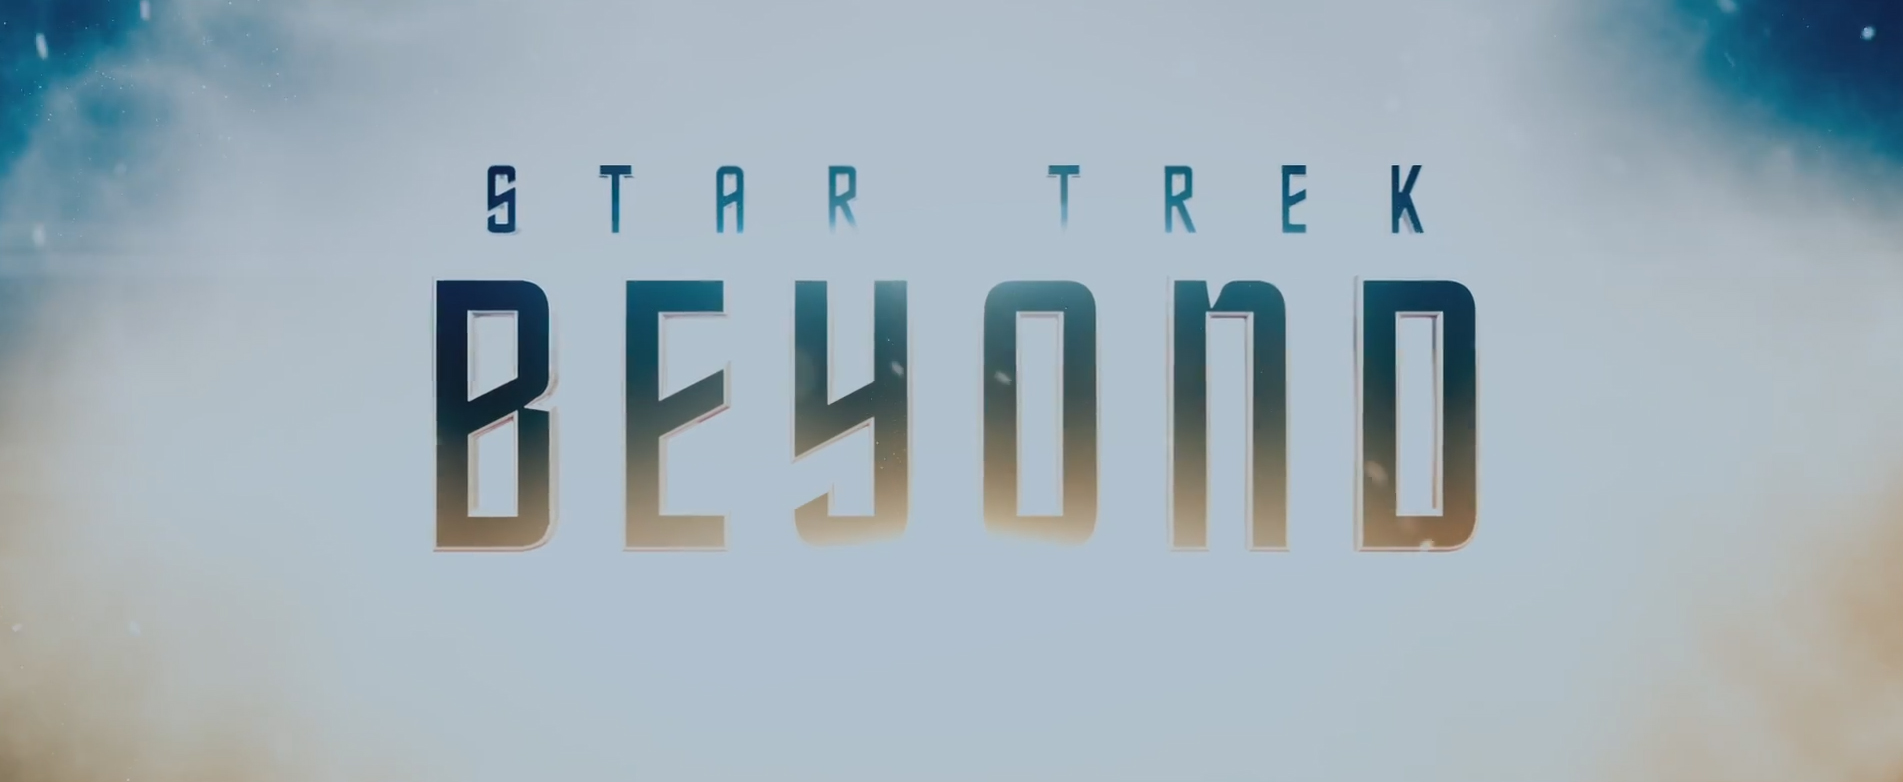 start trek beyond Star Trek Beyond: Des caméos surprises pour le film.